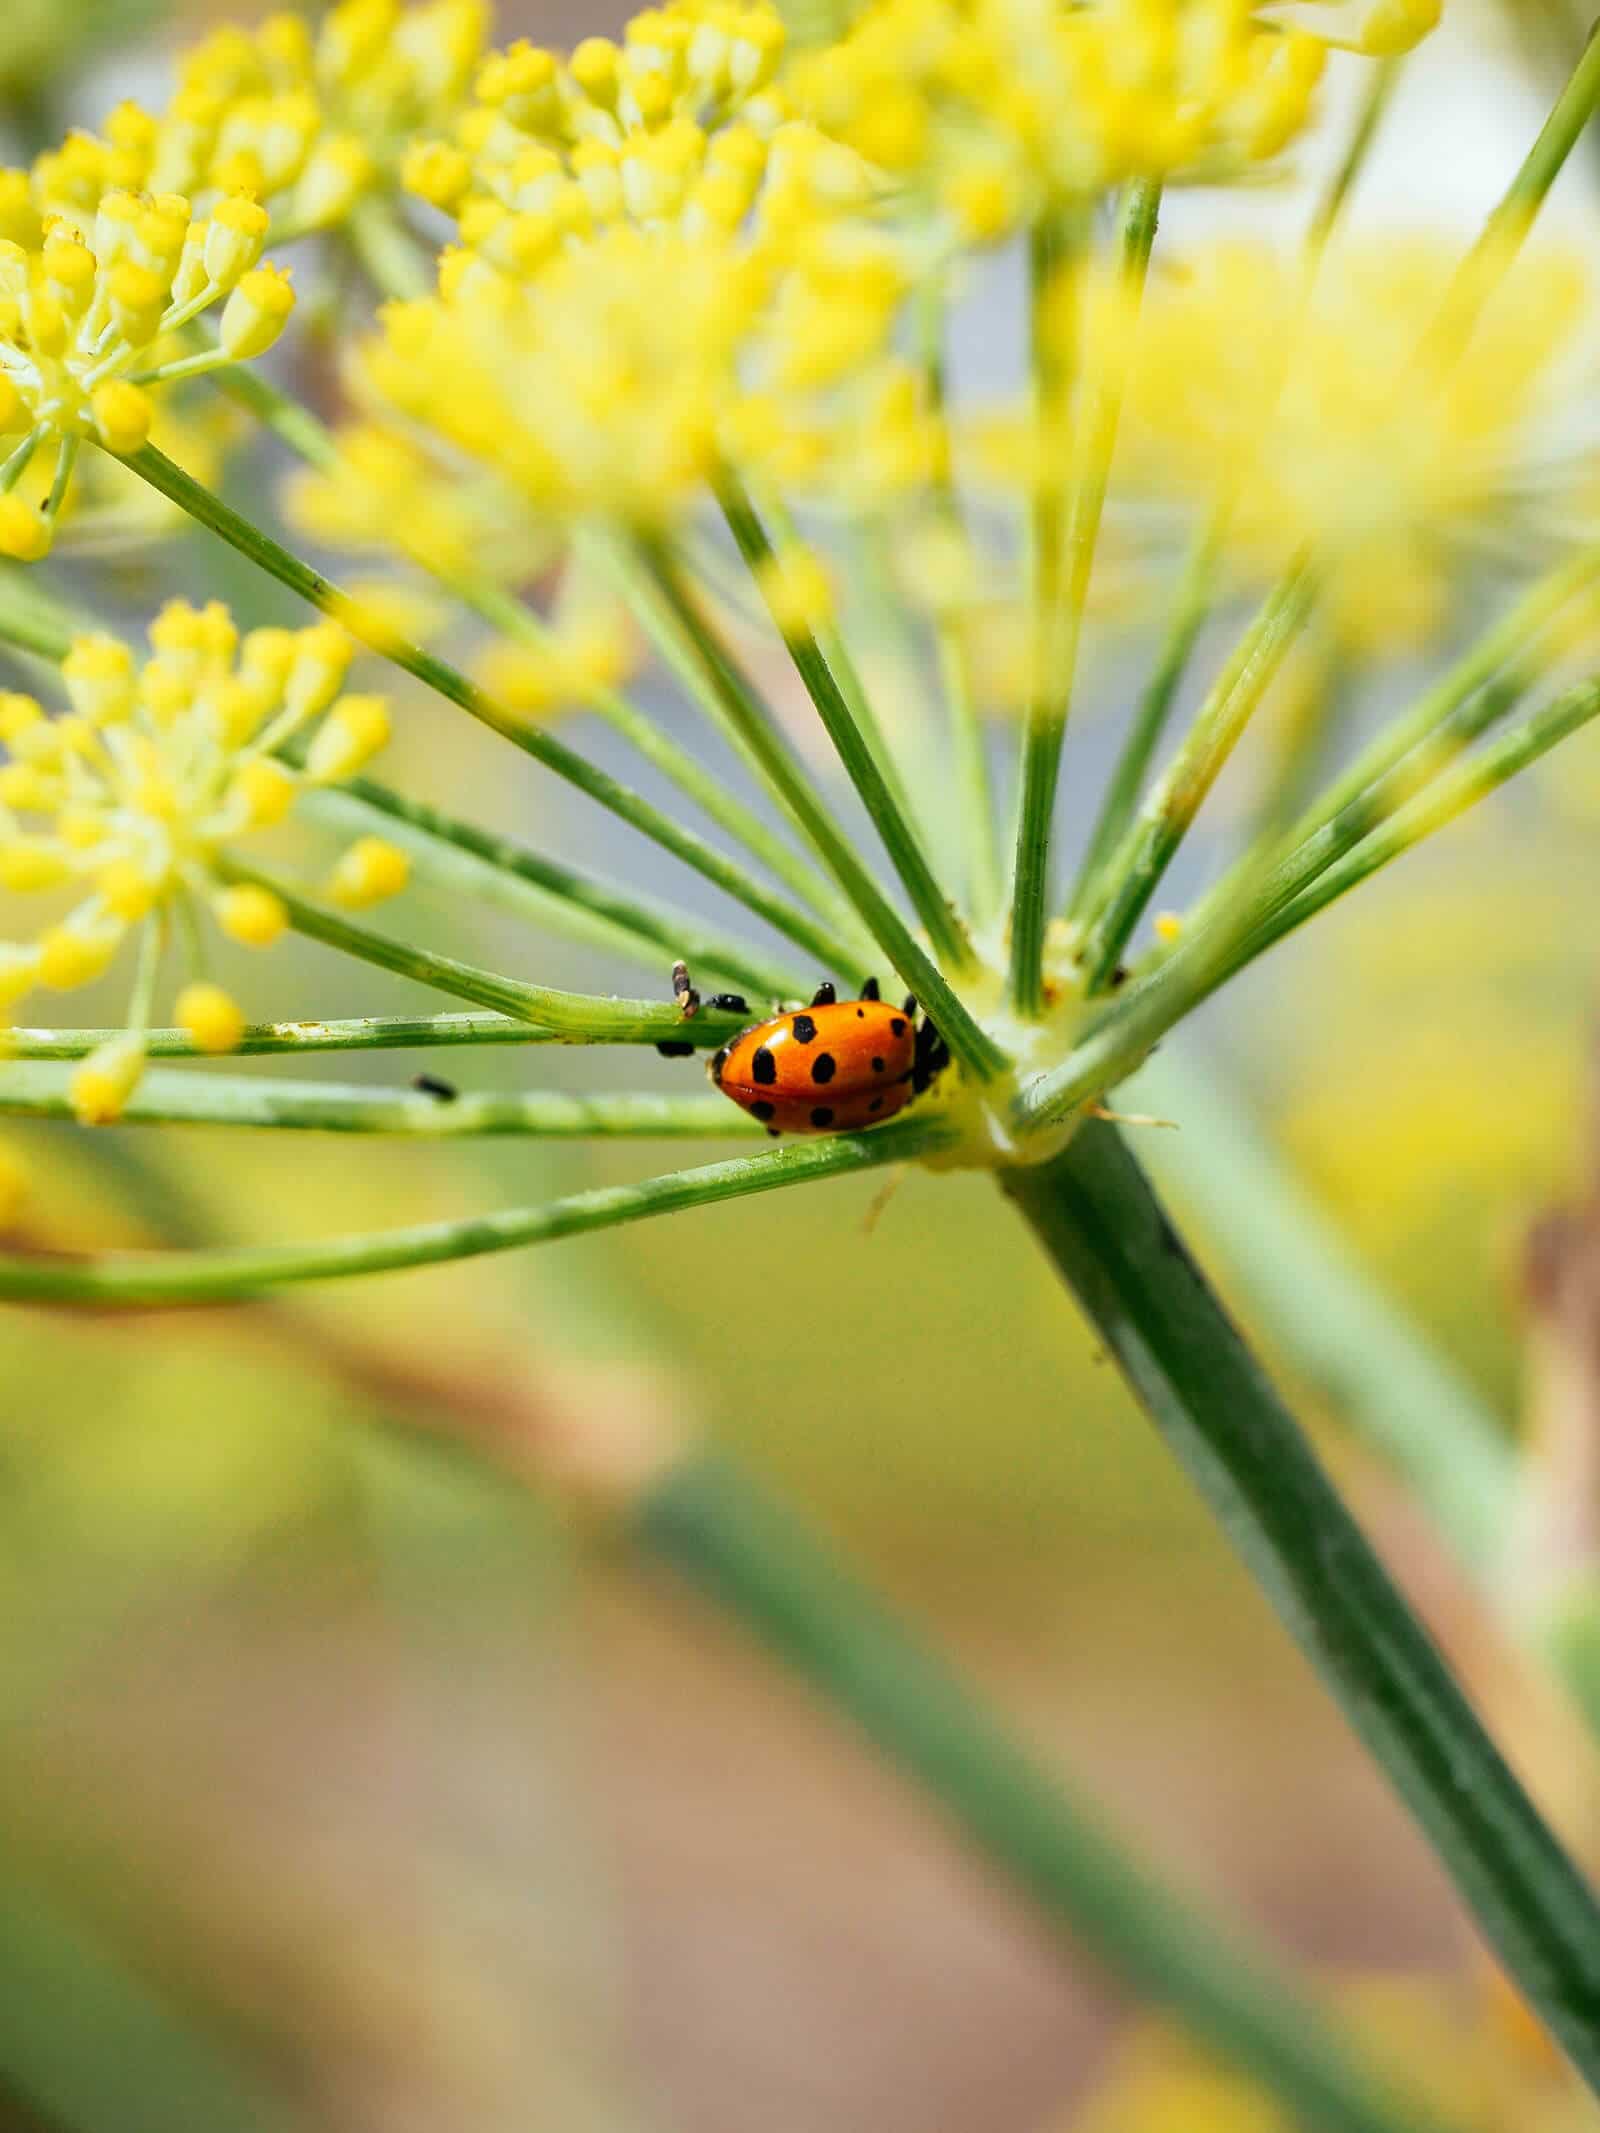 Ladybug crawling on a fennel flower head